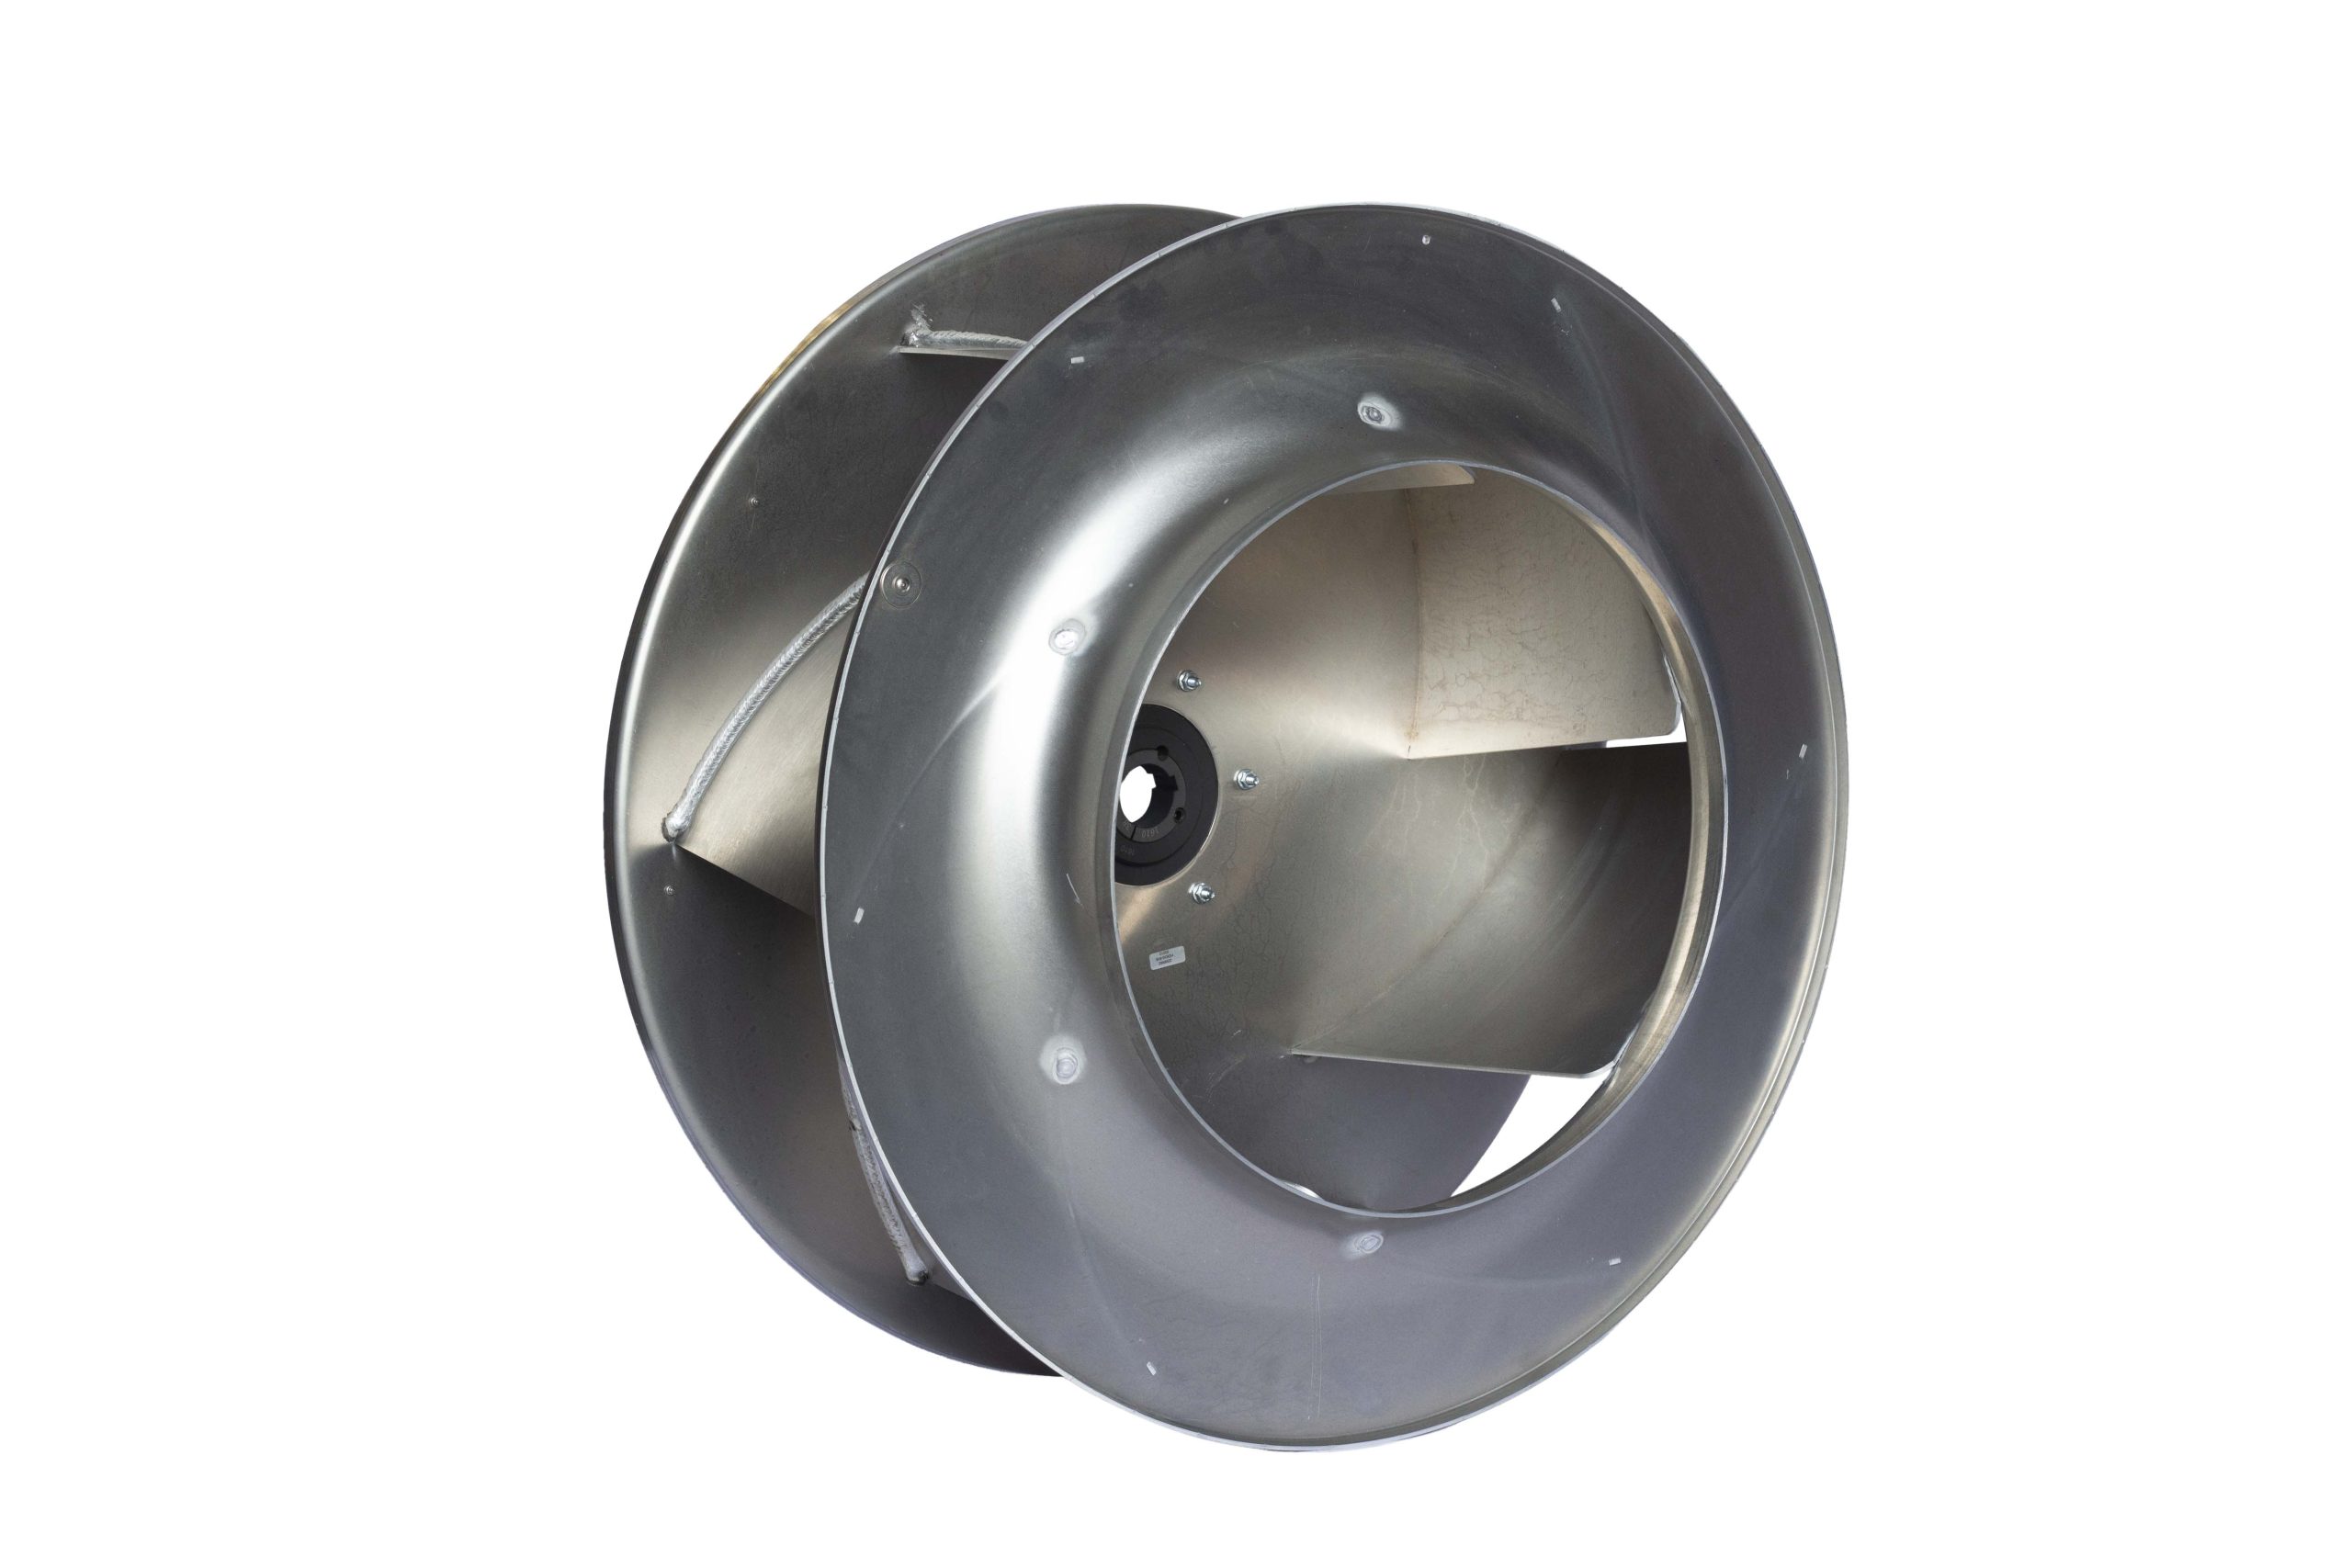 Acoustic Axial Flow Fan Box AAF-560/3